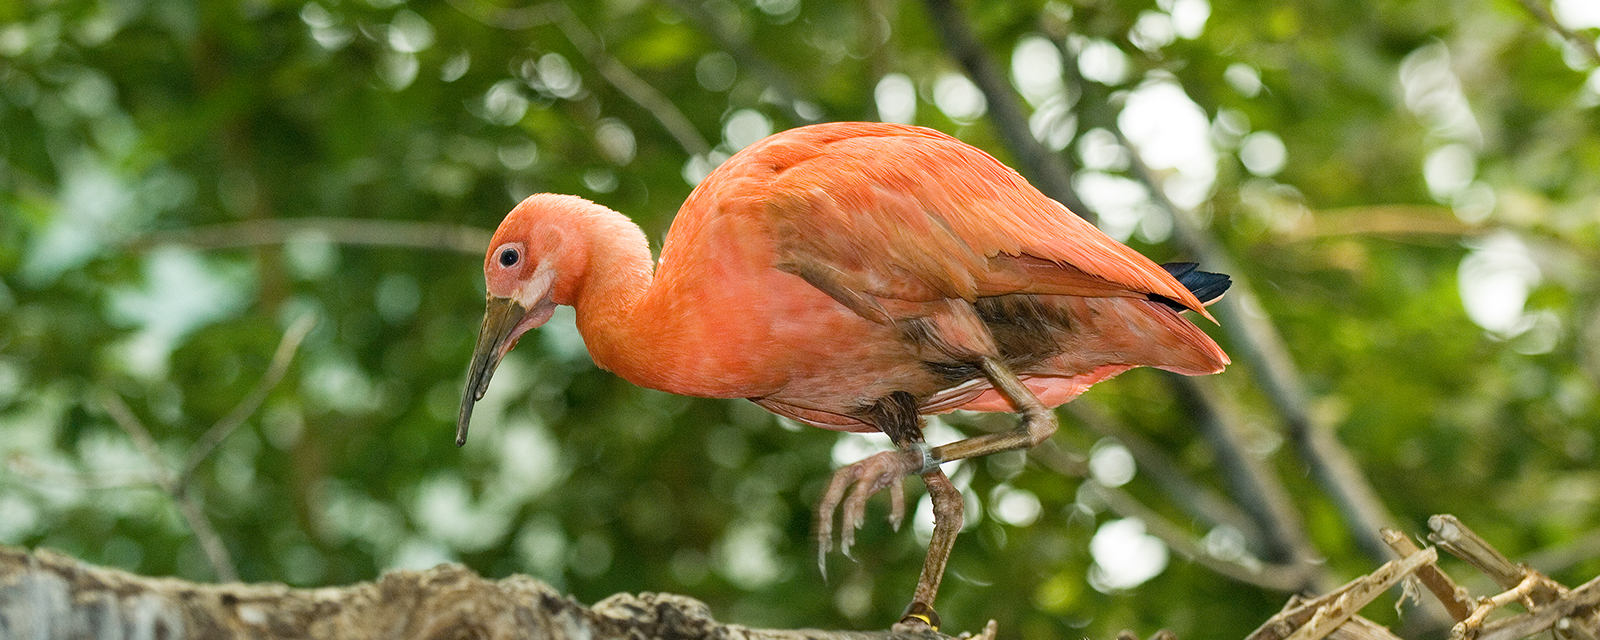 Scarlet ibis in exhibit